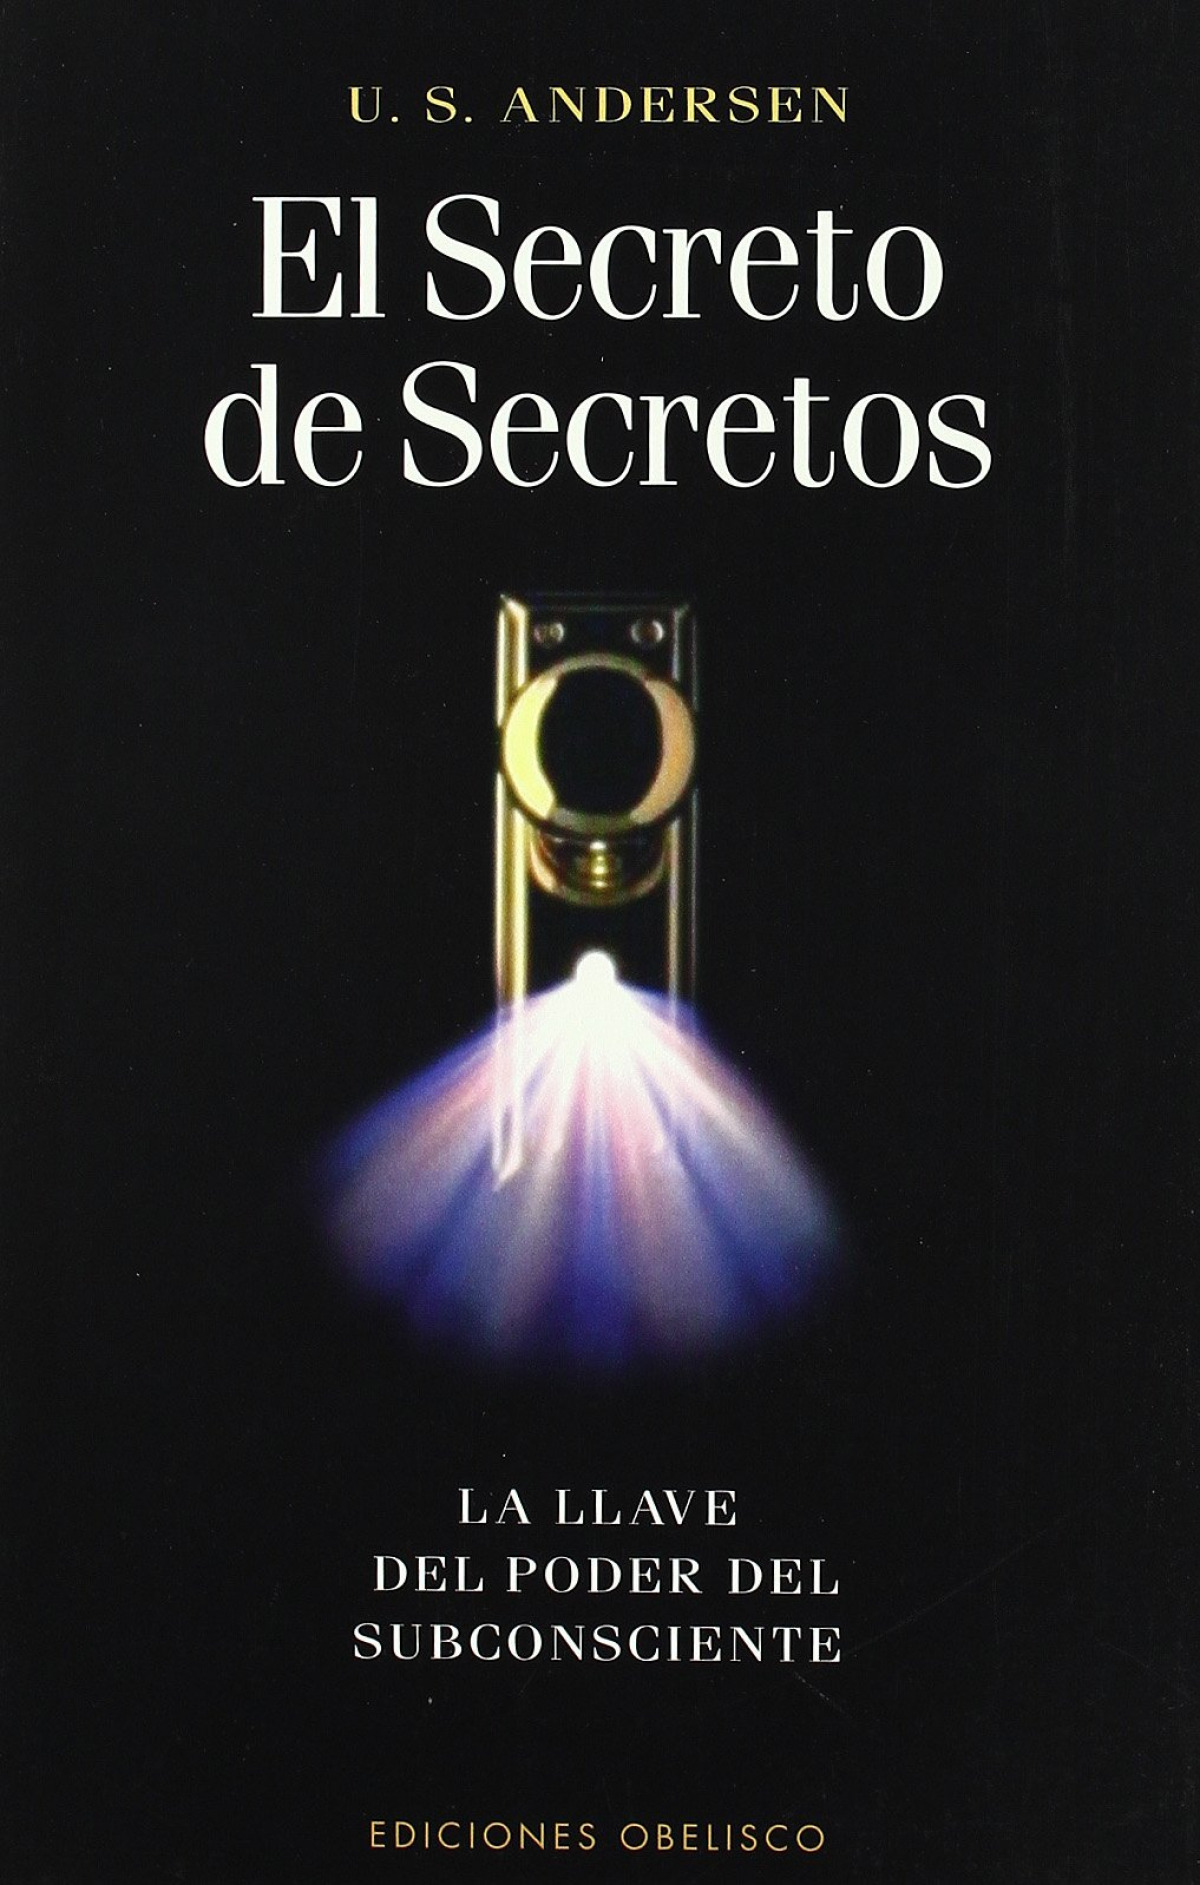 Secreto de secretos, el llave del poder subconsciente, la - Andersen, U.S.